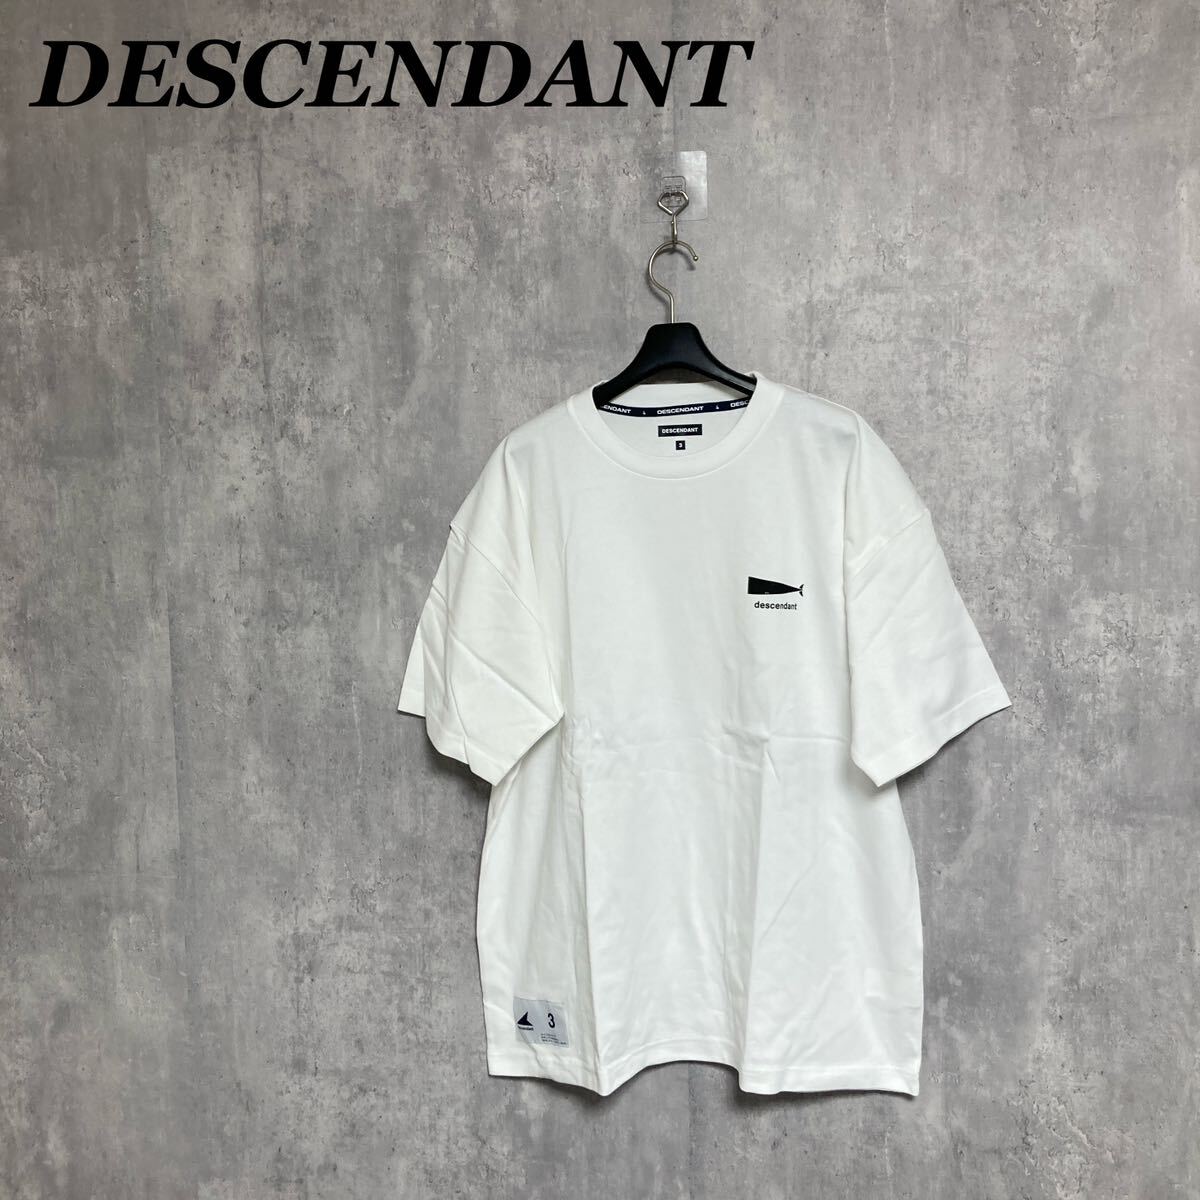 DESCENDANT クジラプリント Tシャツ 3 半袖 白 ホワイト ディセンダントの画像1